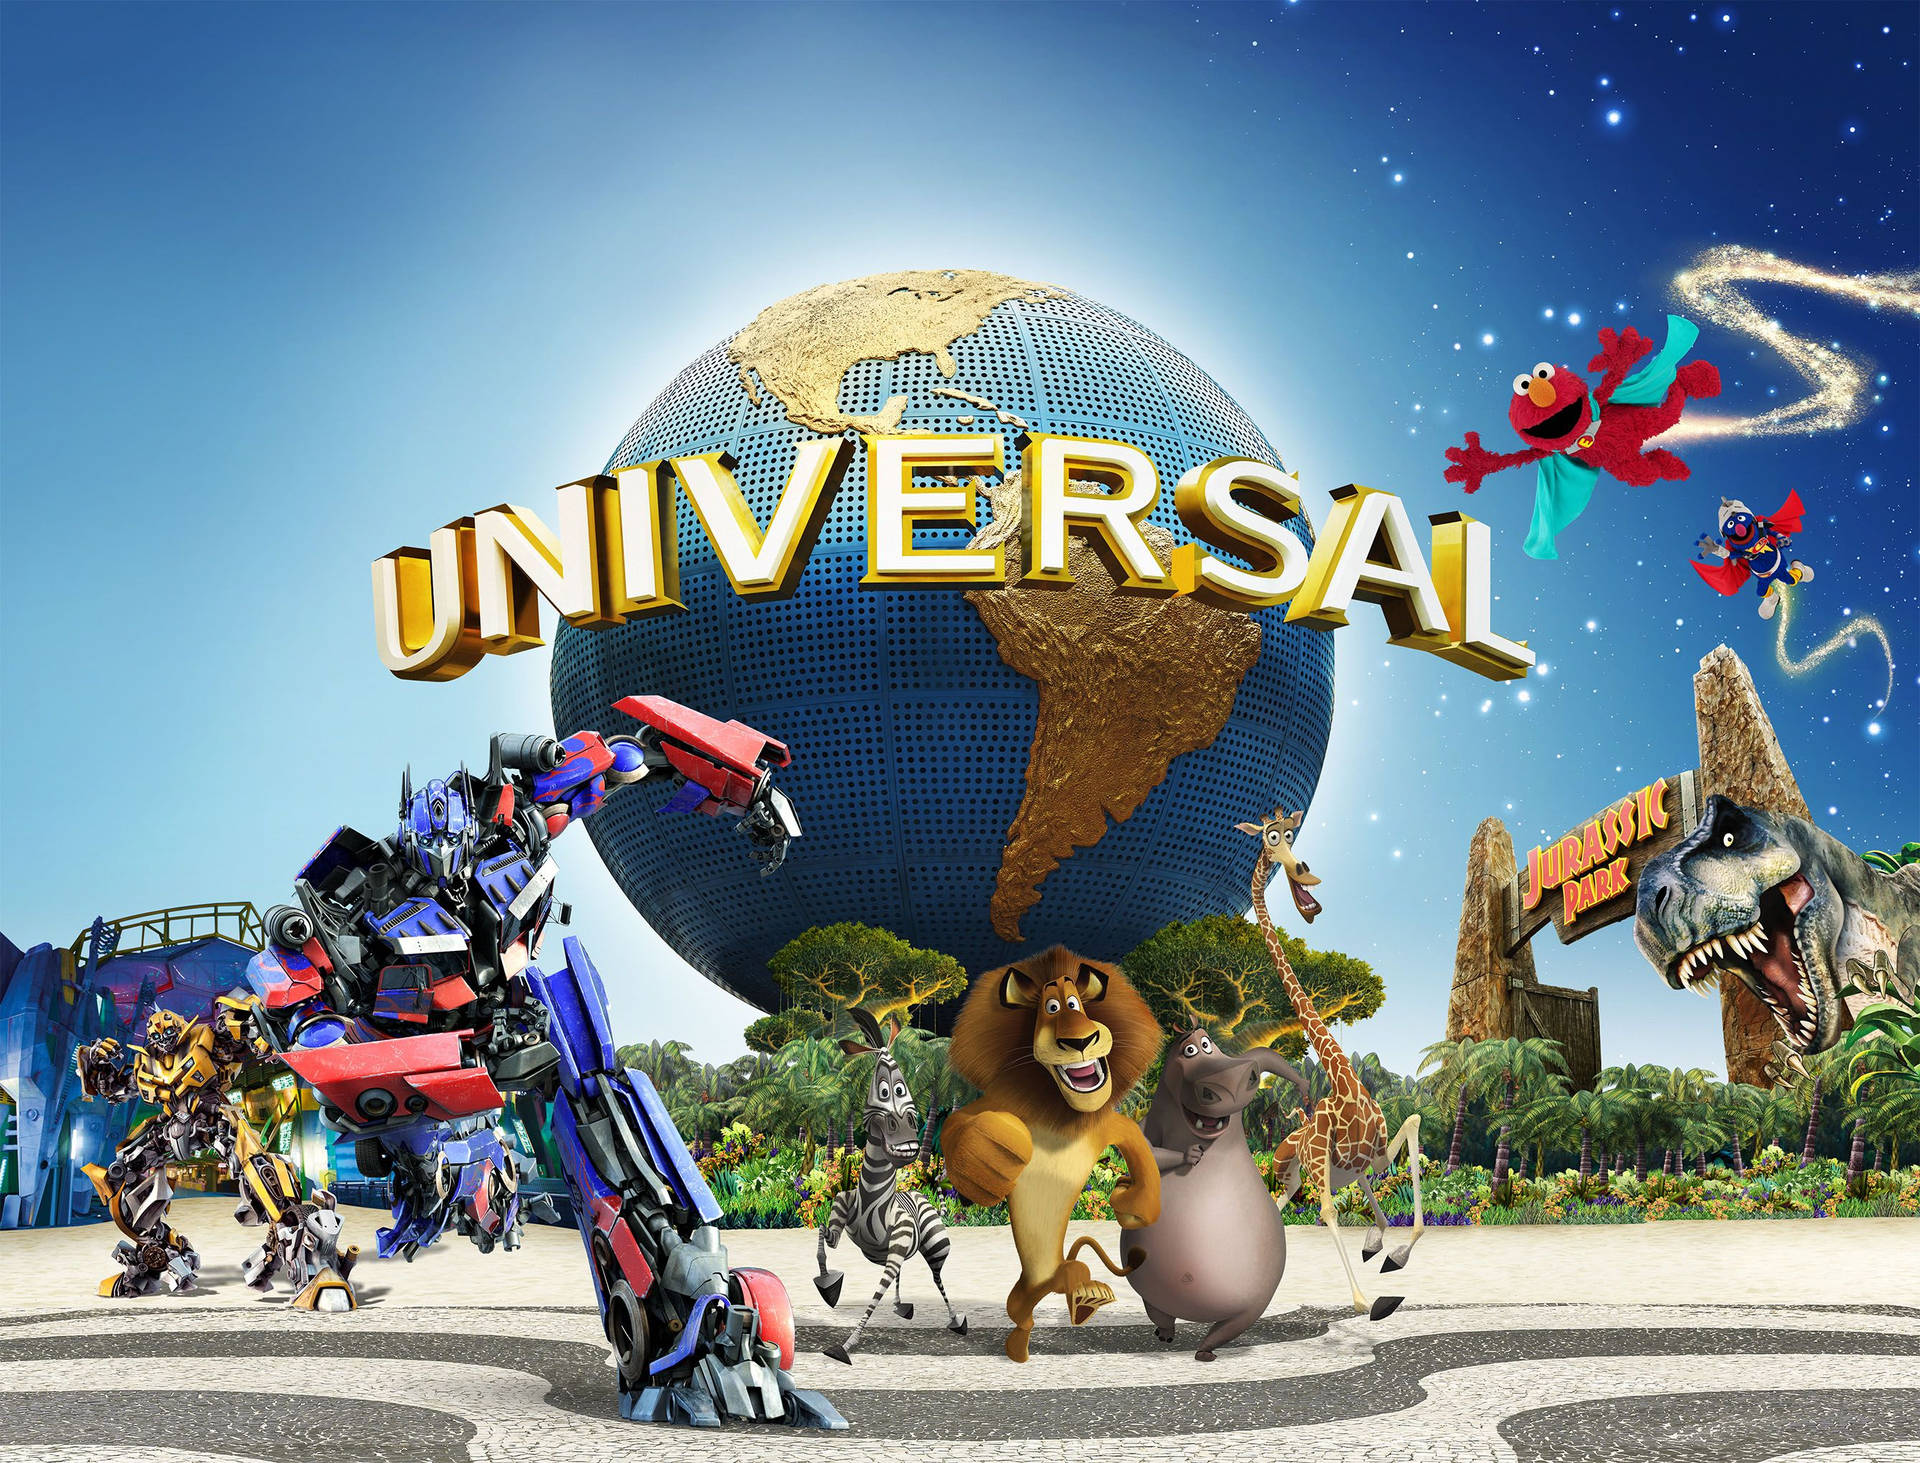 Personagensfictícios Da Universal Studios. Papel de Parede